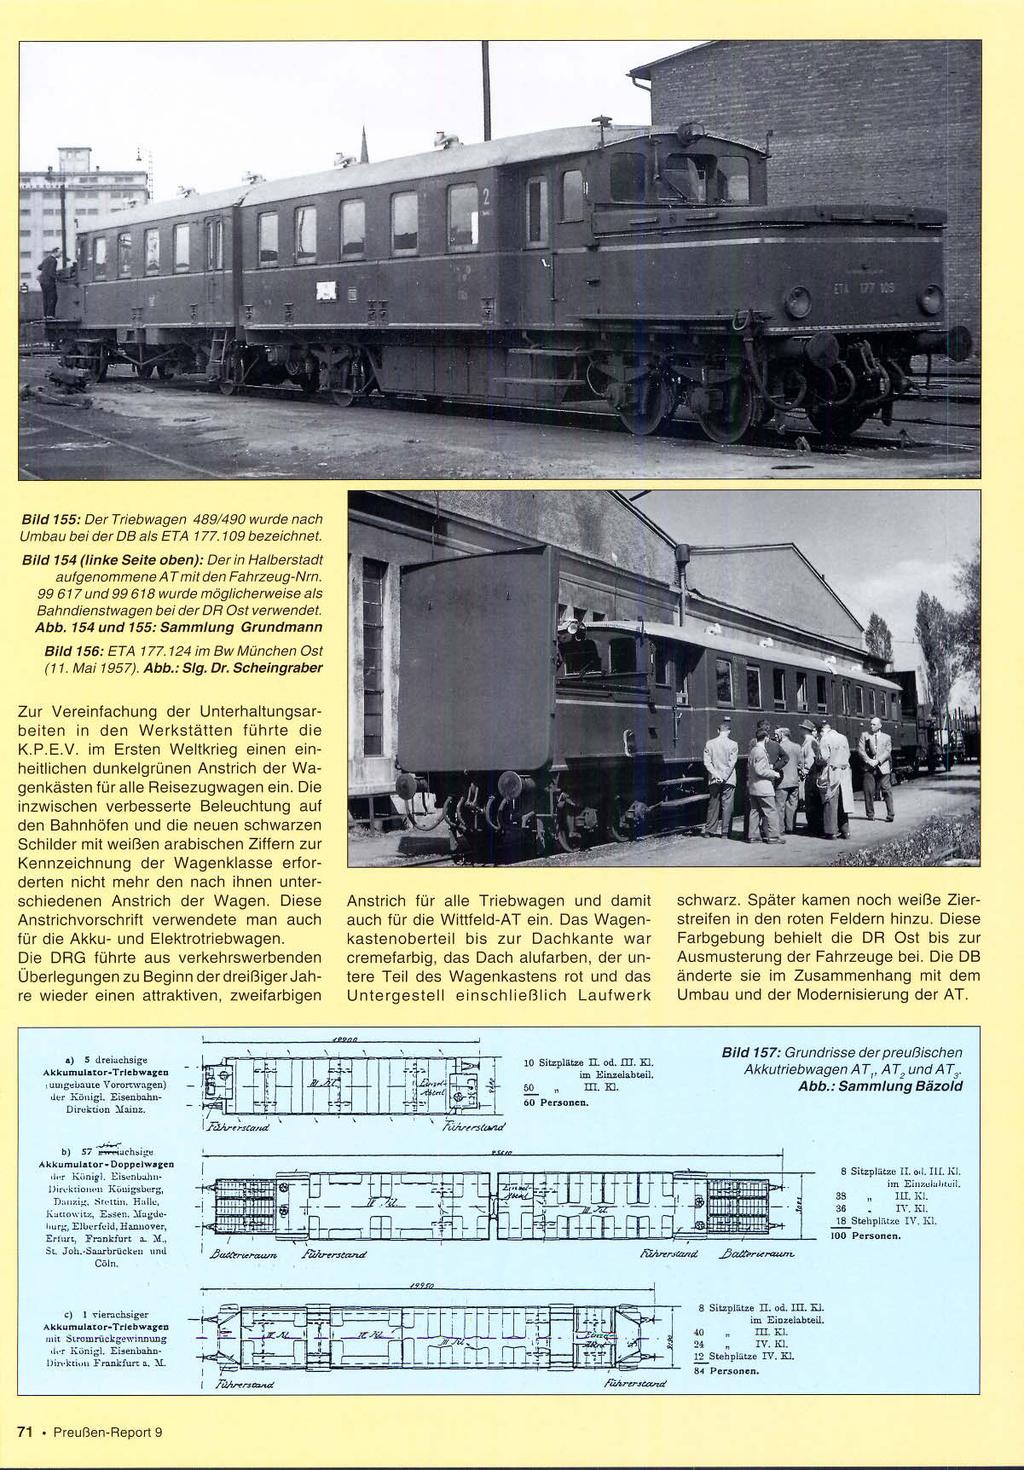 / Bild 155: Der TrIebwagen 489/490 wurde nach Umbau bei der DB als ETA 177.109 bezeichnet. Bild 154 (linke Seite oben): Der /n Halberstadt aufgenommene A T mit den Fahrzeug-Nrn.